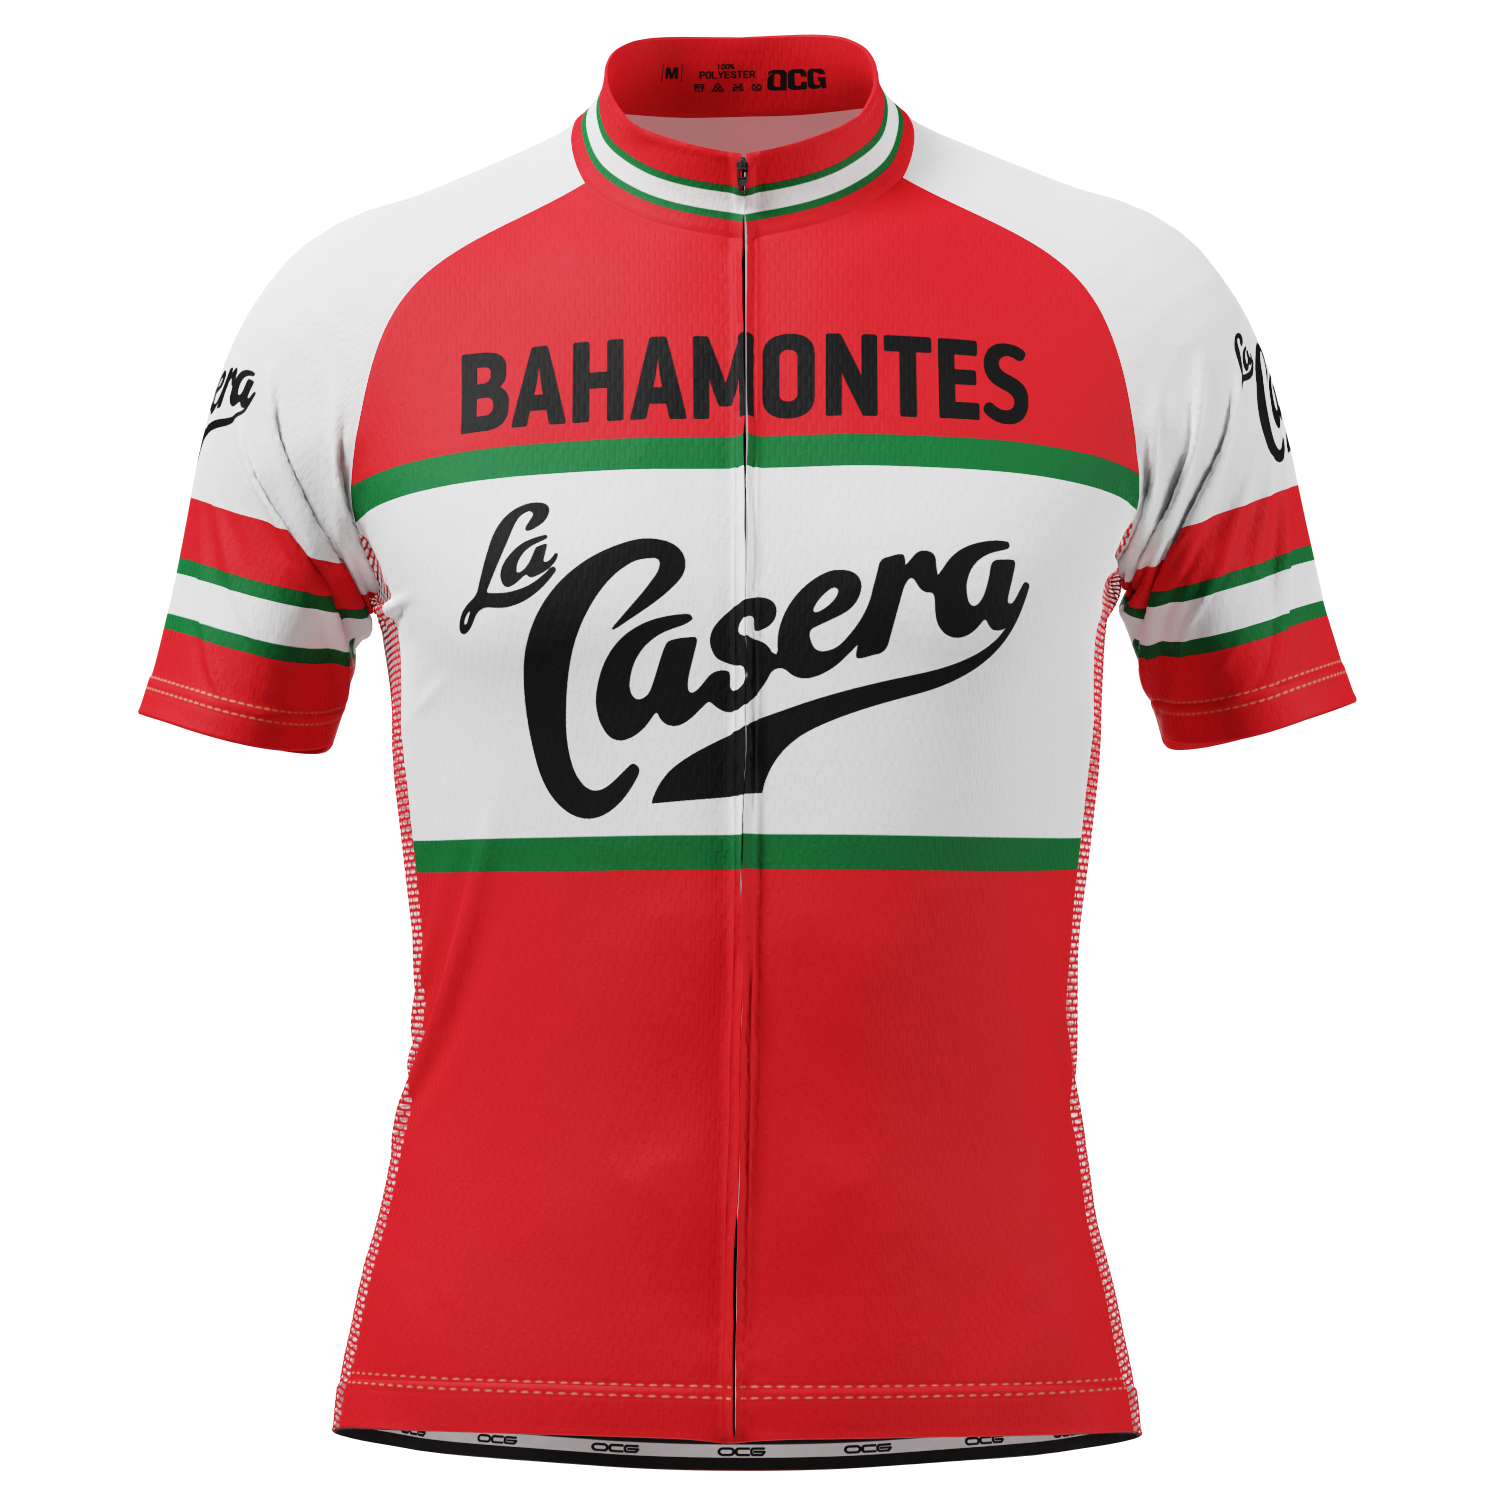 Men's La Casera Bahamontes Short Sleeve Cycling Jersey